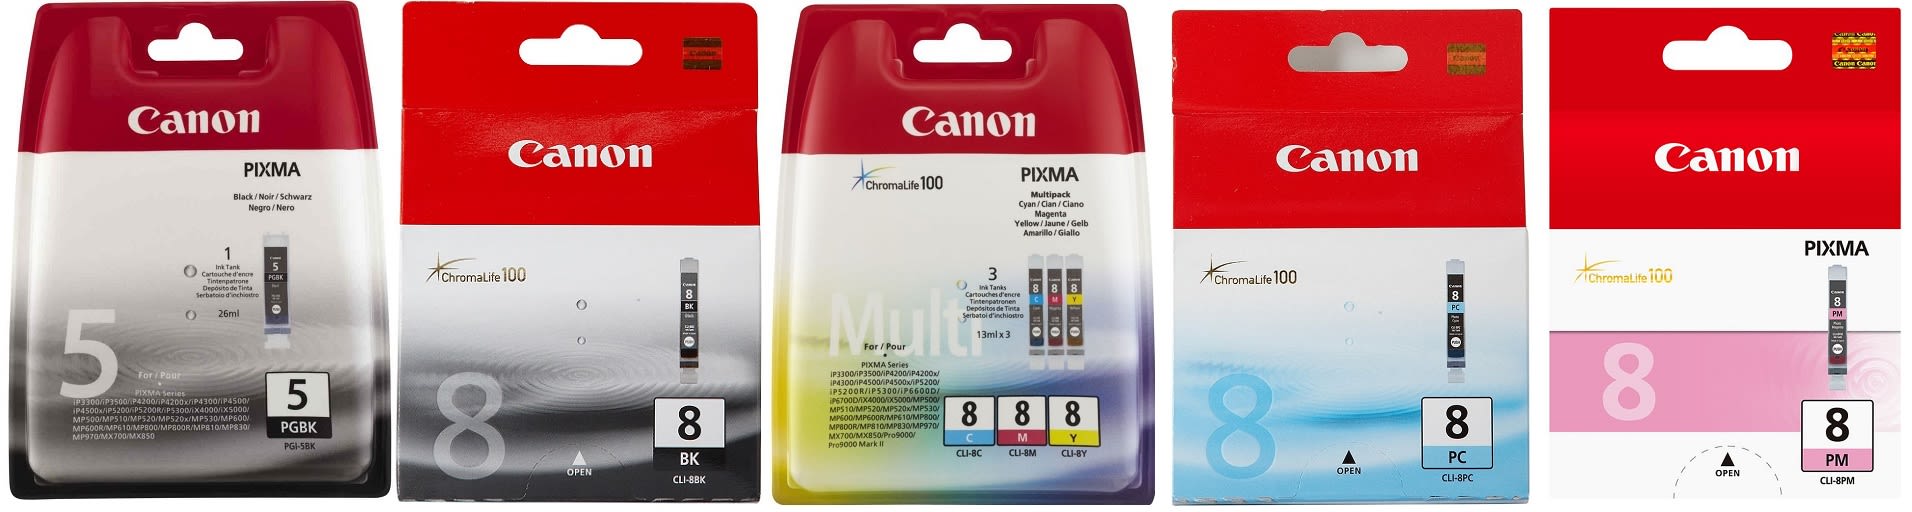 Картридж для Canon Pixma MP960 Купить комплект оригинальных чернил.